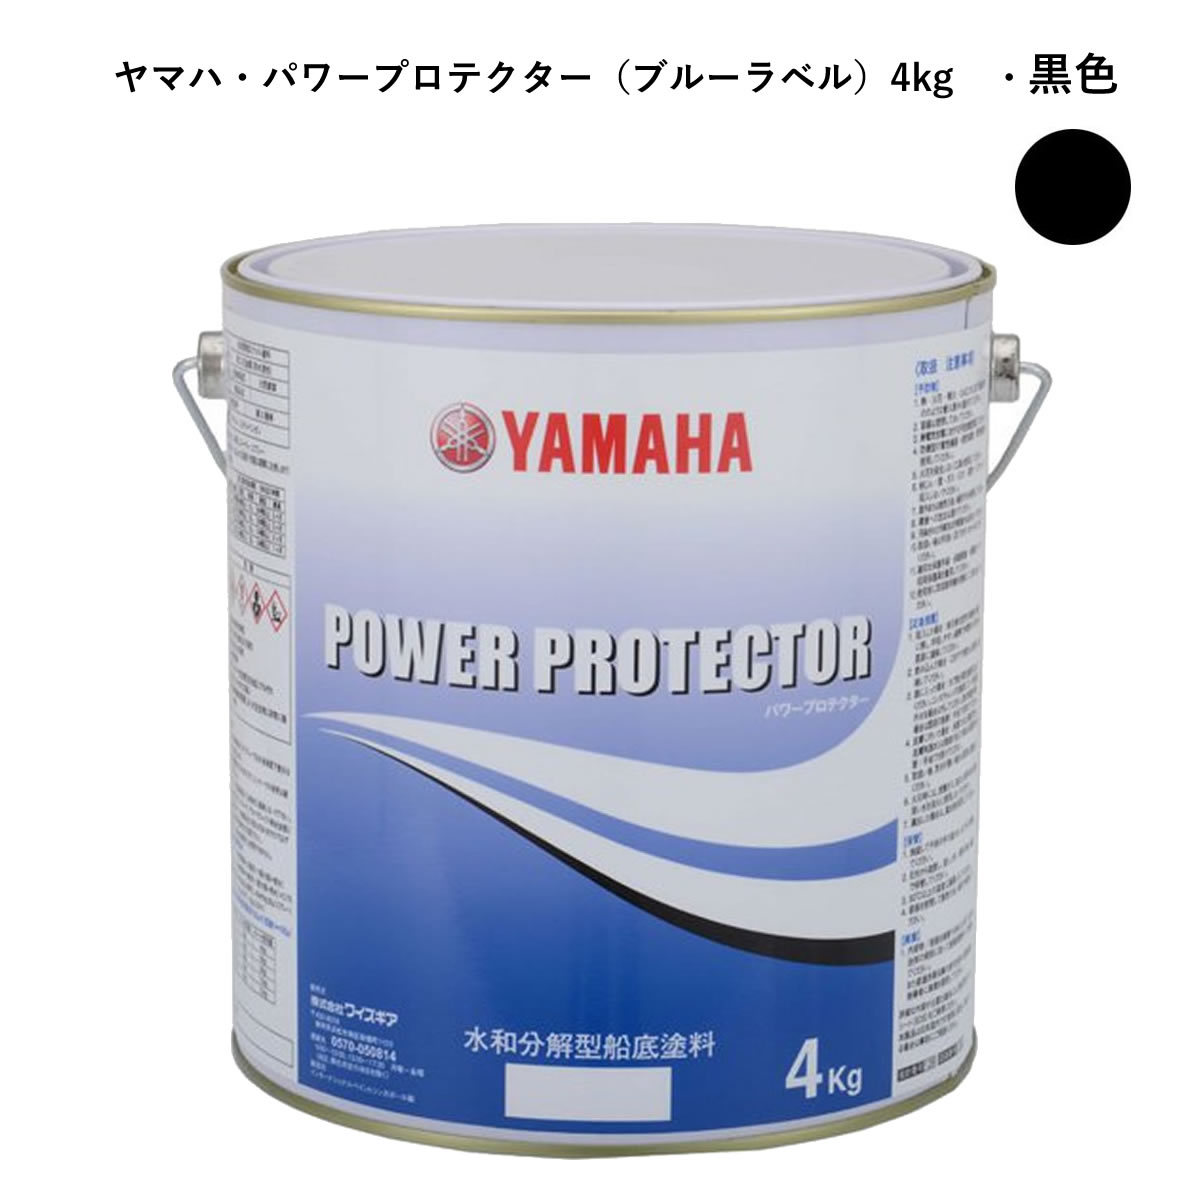  Yamaha днище судна краска power protector синий жестяная банка для собственного потребления ( чёрный цвет 4kg)QW6-NIPY16008